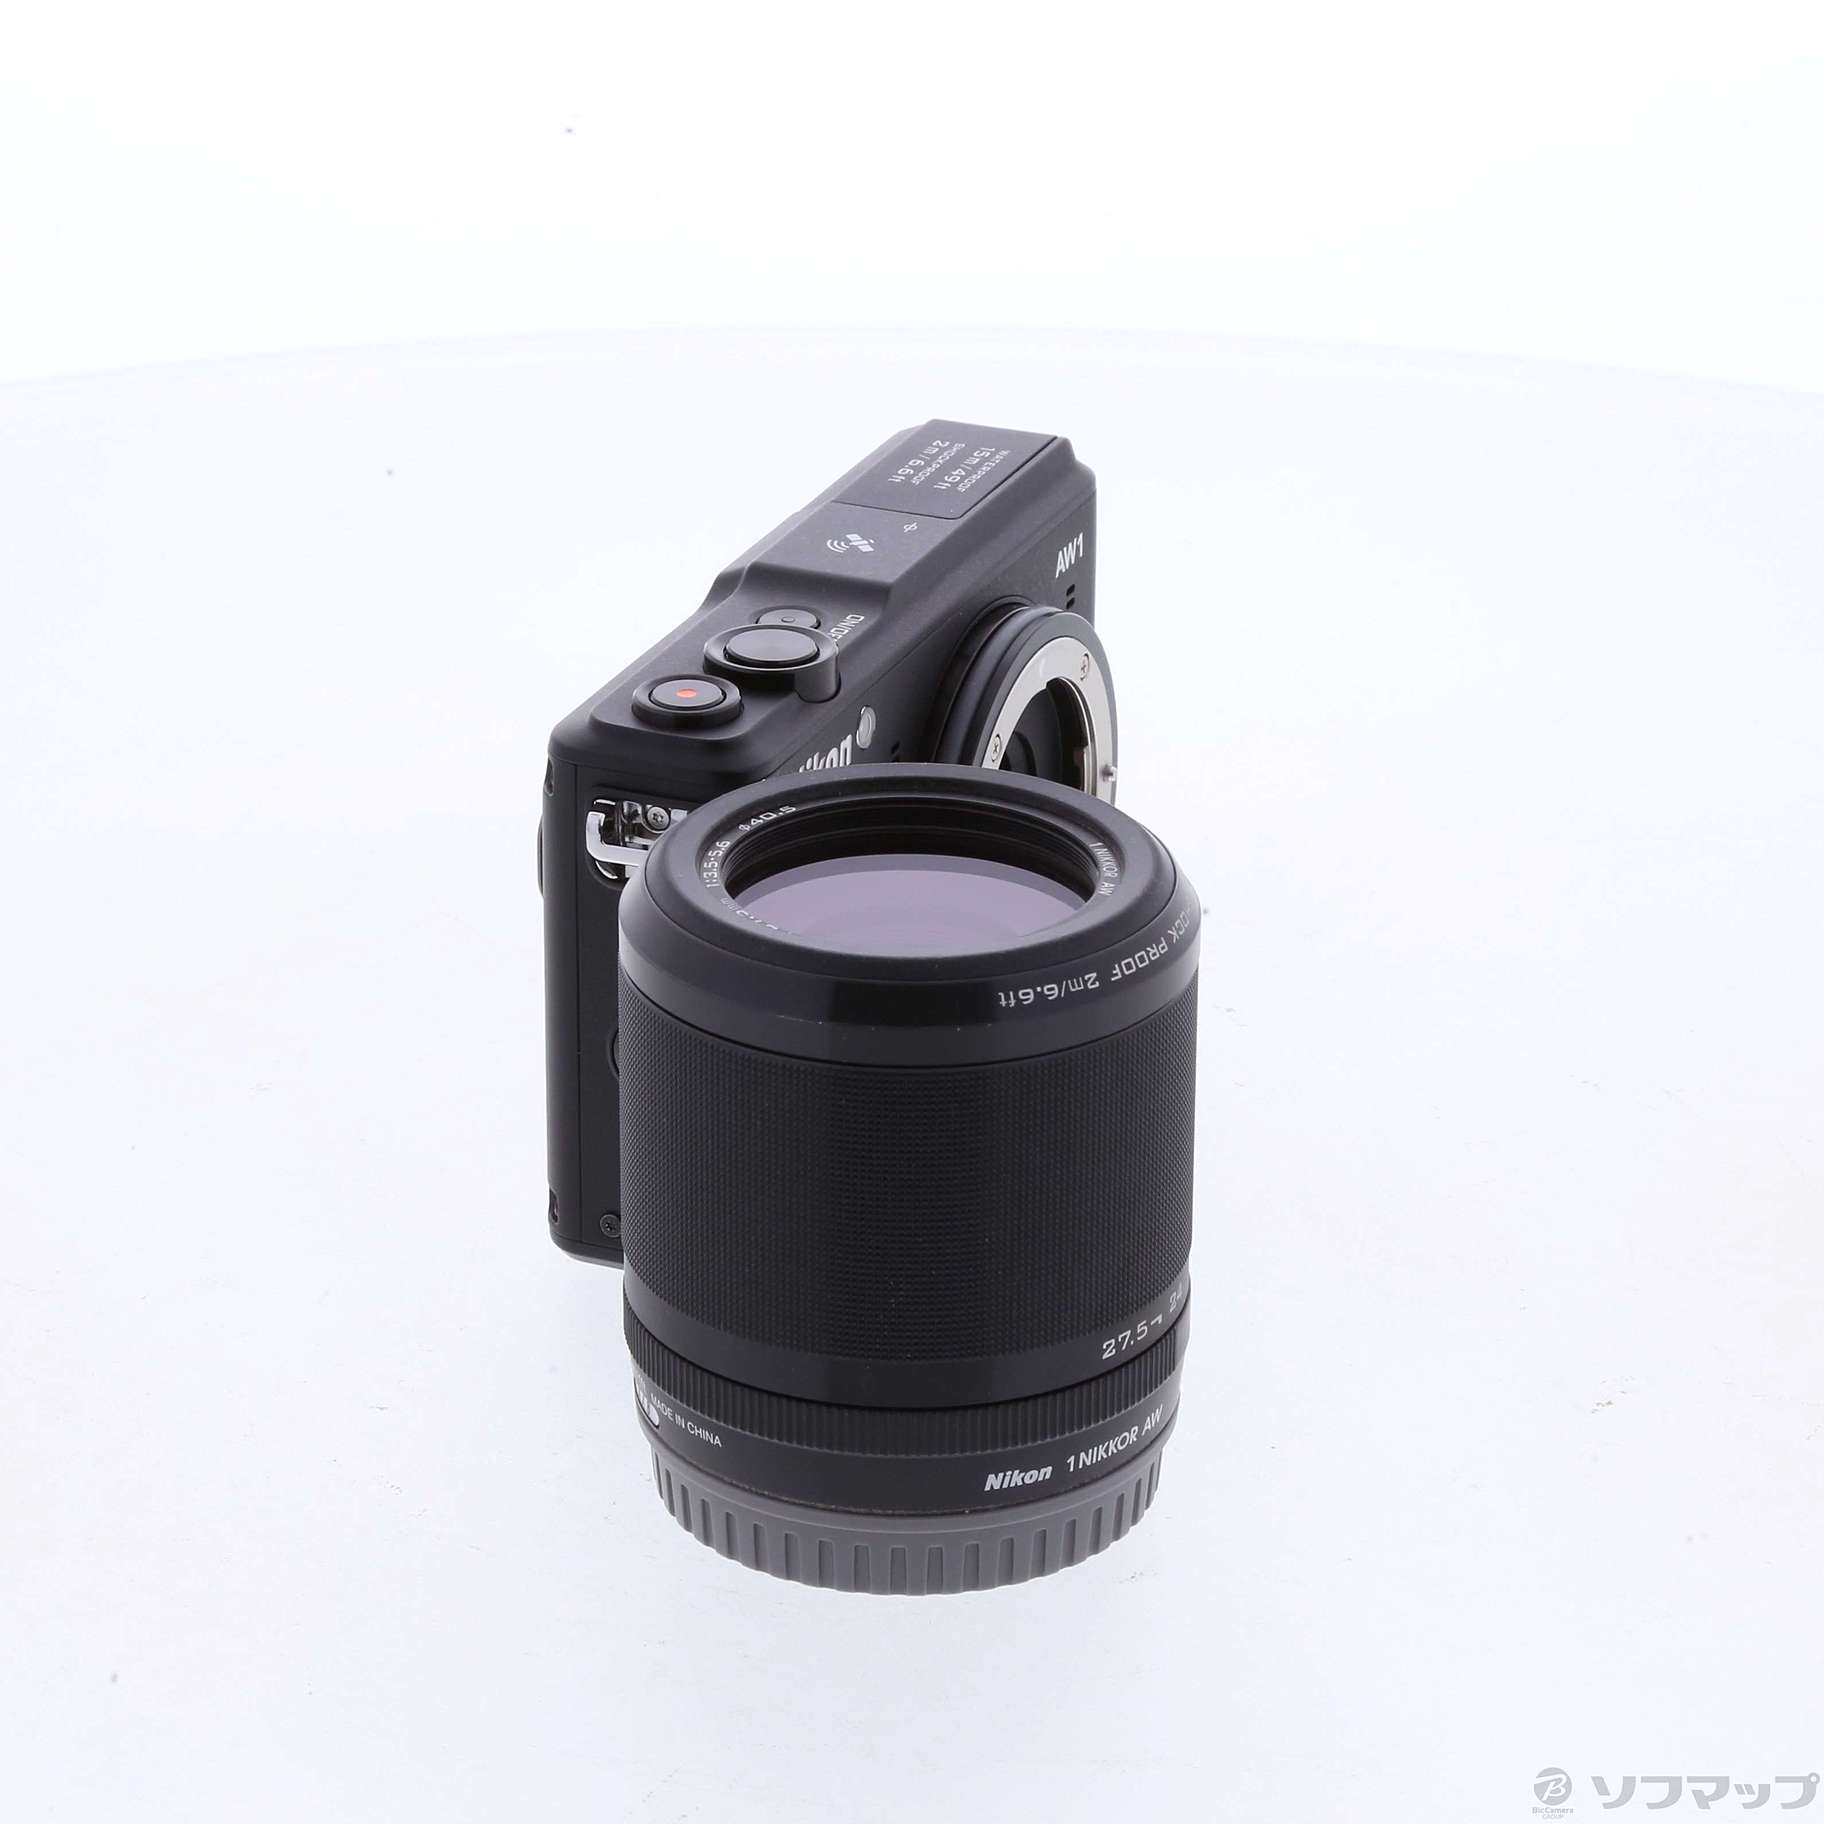 高級素材使用ブランド AW1 Nikon1 ミラーレス一眼カメラ Nikon 防水